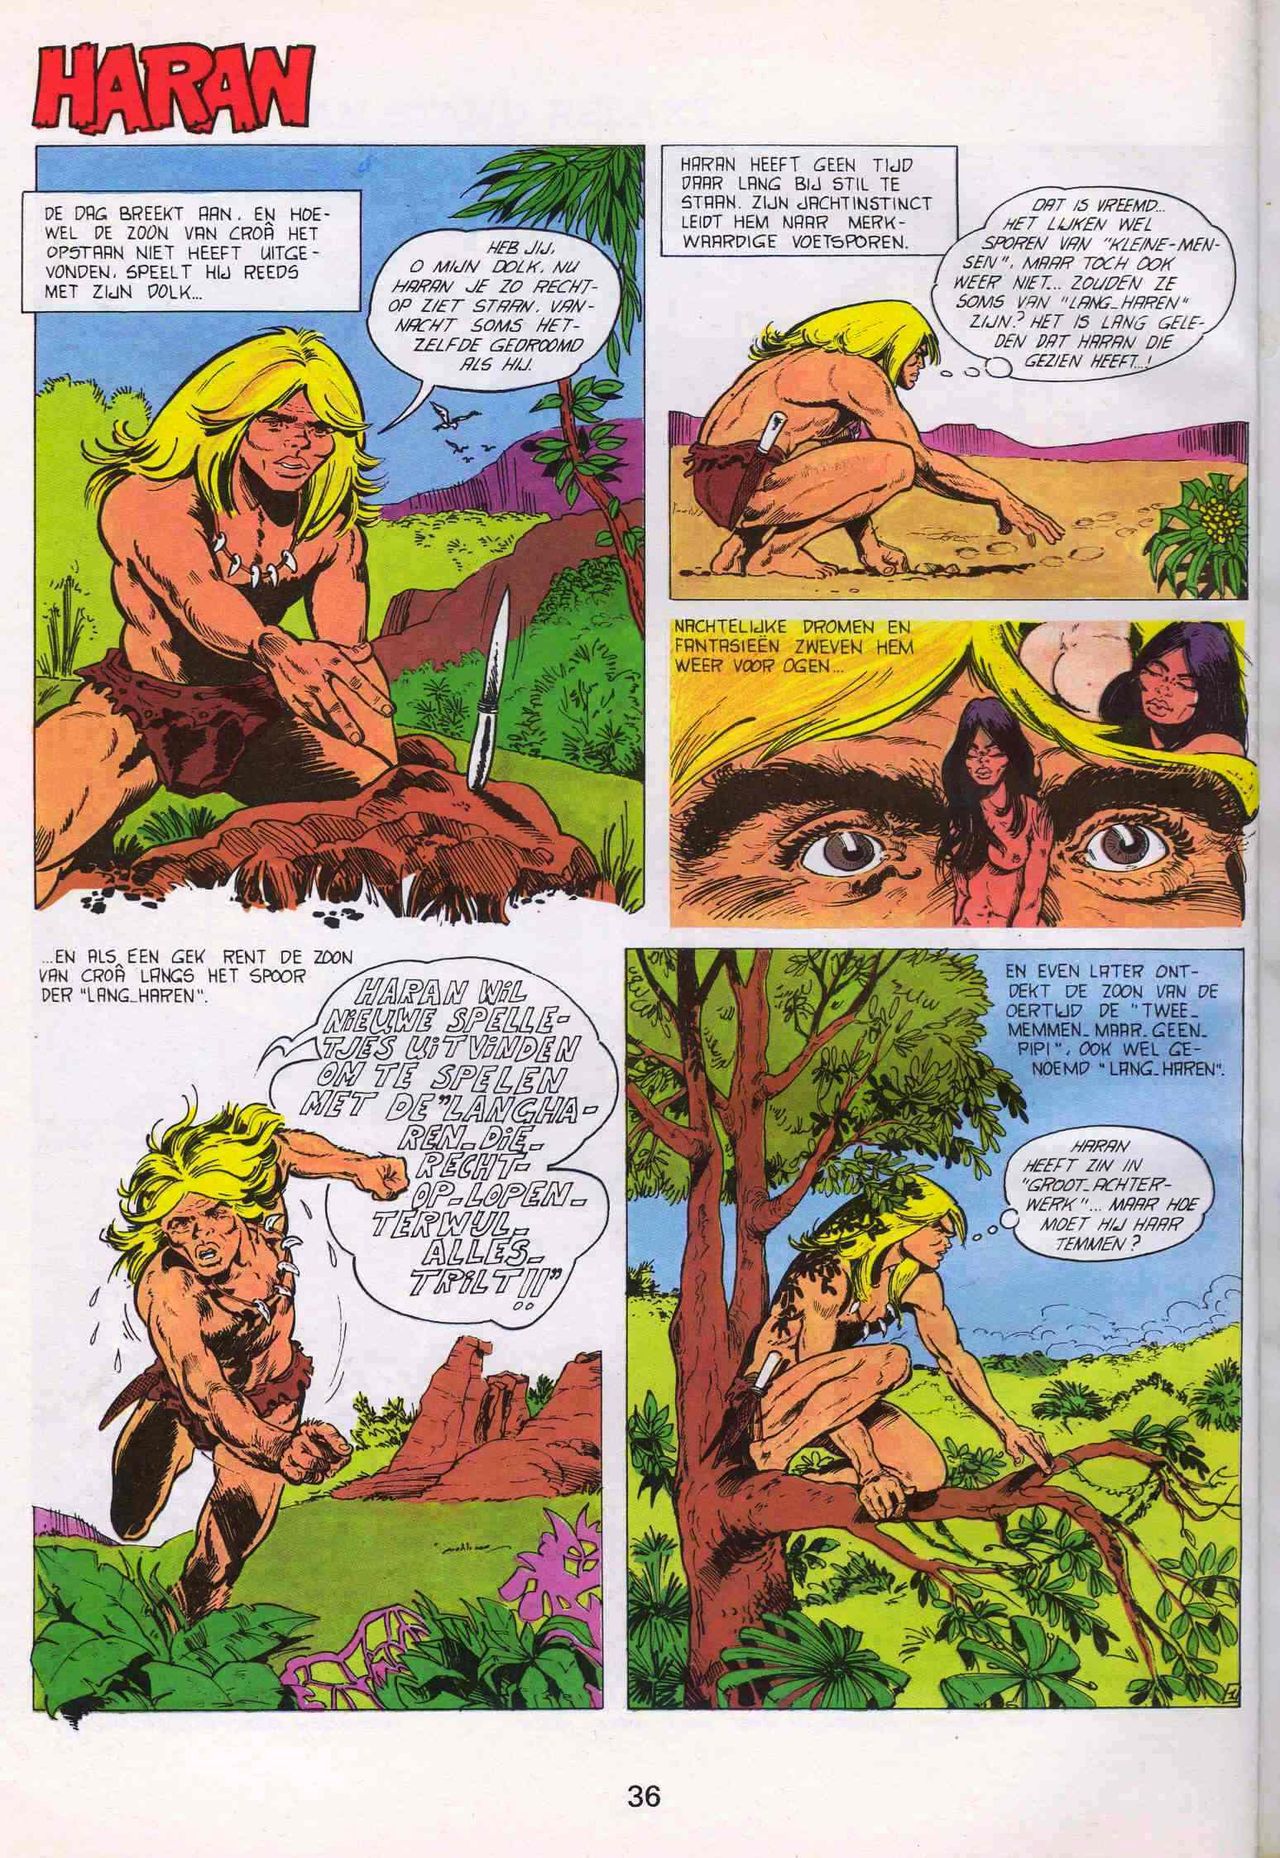 Strip-Tease - 01 - Een Vrolijke Parodie Op Bekende Striphelden (Dutch) Een driedelige serie van Roger Brunel 37